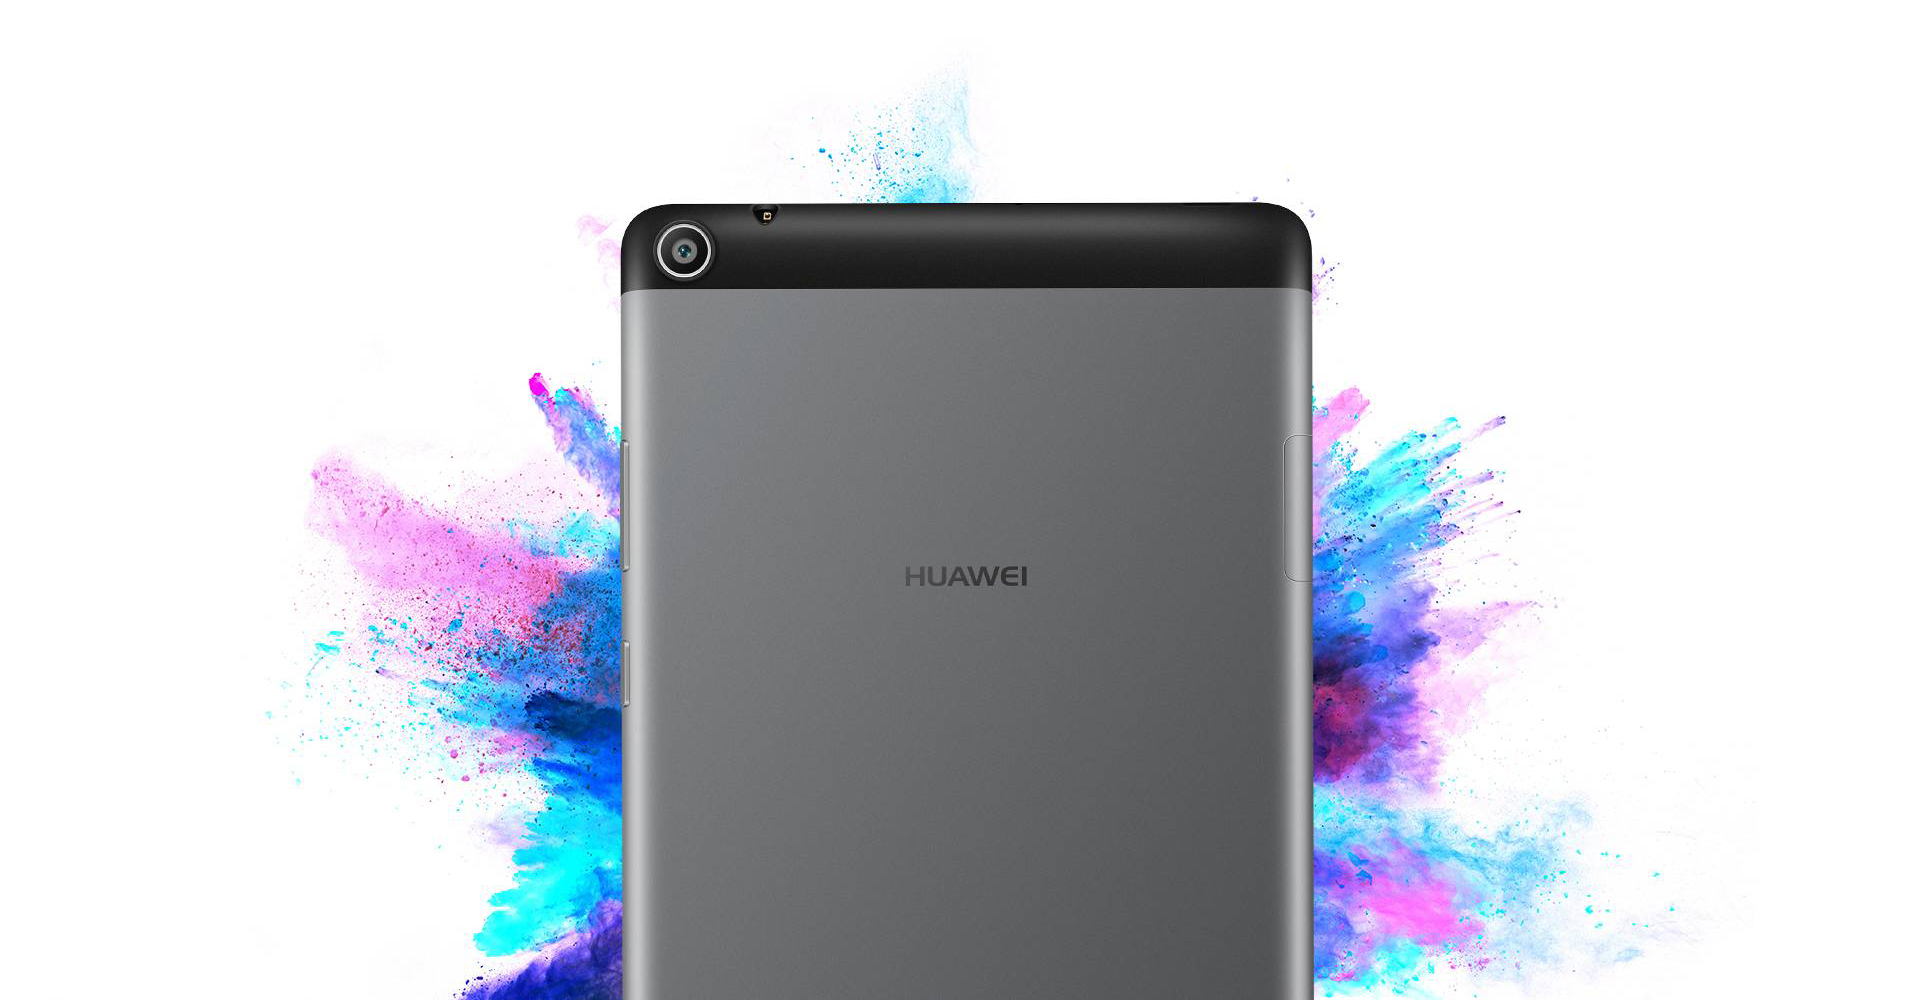  Huawei Media Pad T3-7 Ram 2 Tablet